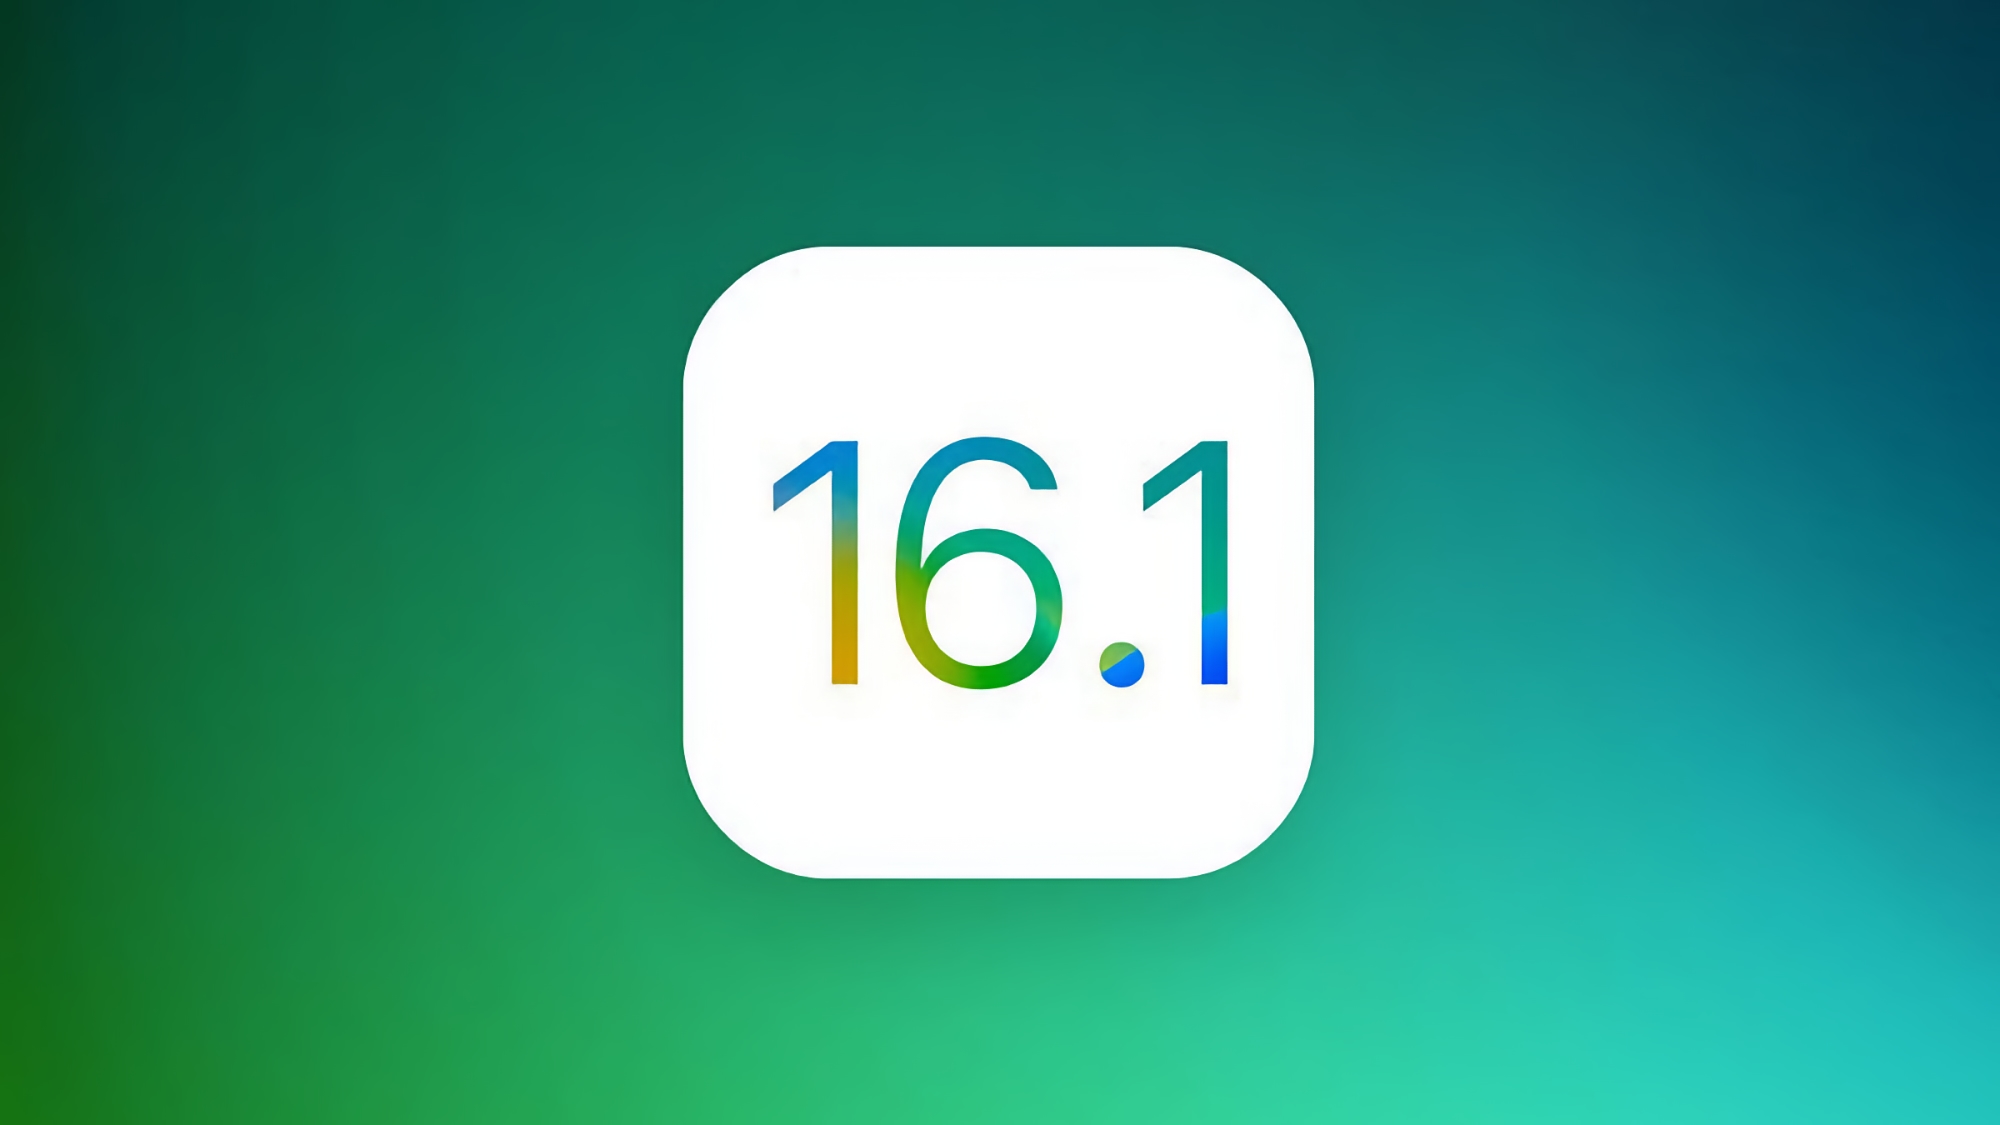 No solo iPadOS 16.1 y macOS Ventura: Apple presentará otra versión estable de iOS 16.1 el 24 de octubre